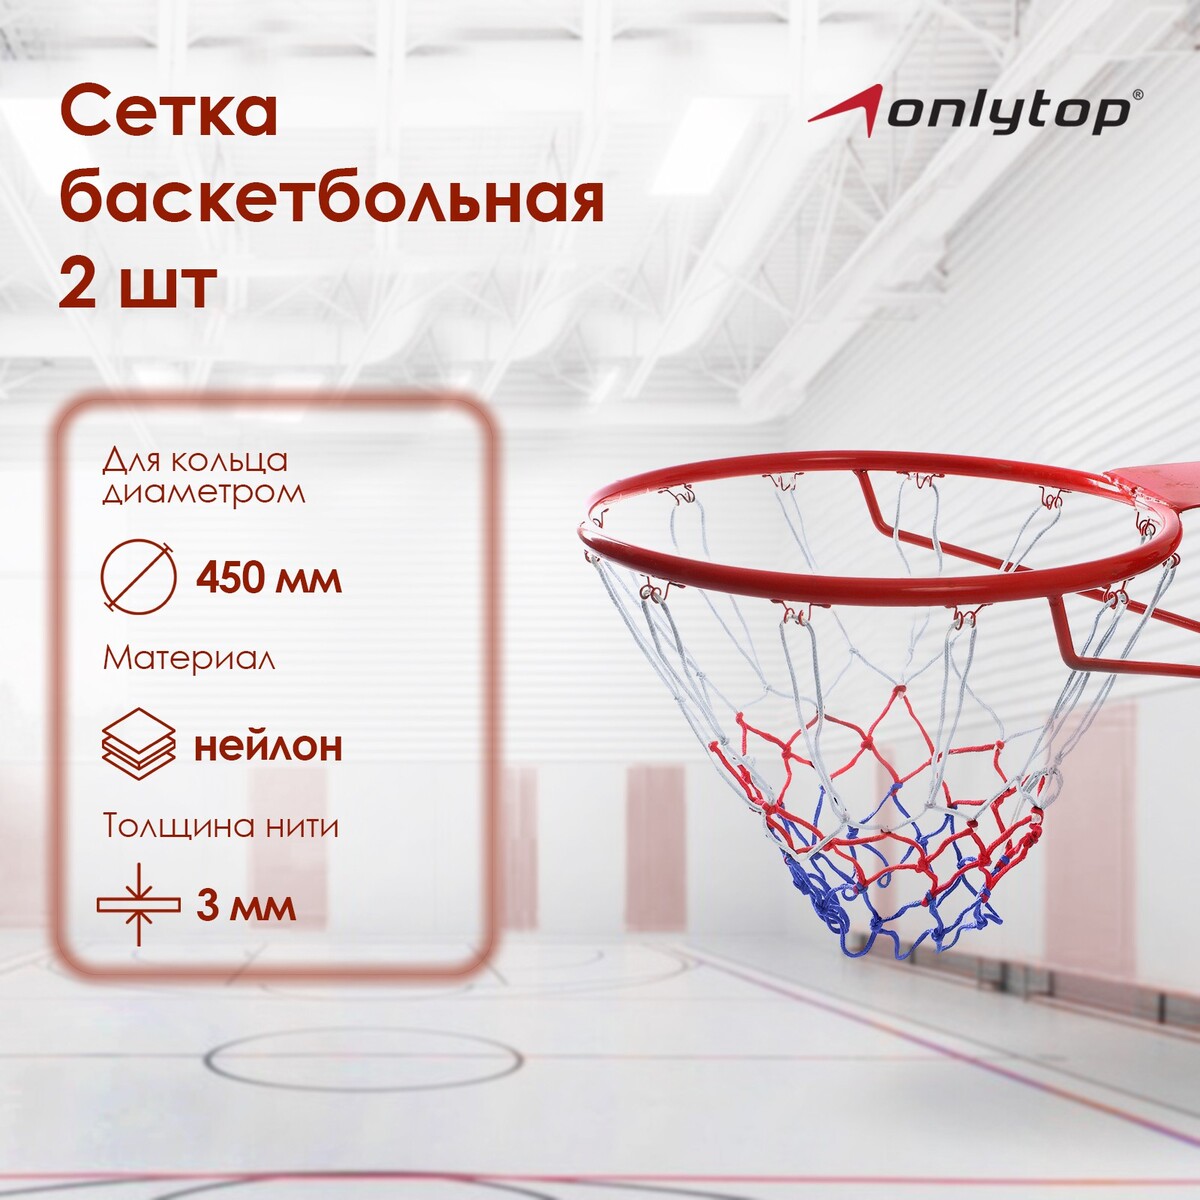 Сетка баскетбольная onlitop, 45 см, нить 3 мм, 2 шт. сетка баскетбольная torres нить 4мм ss11050 бело сине красная